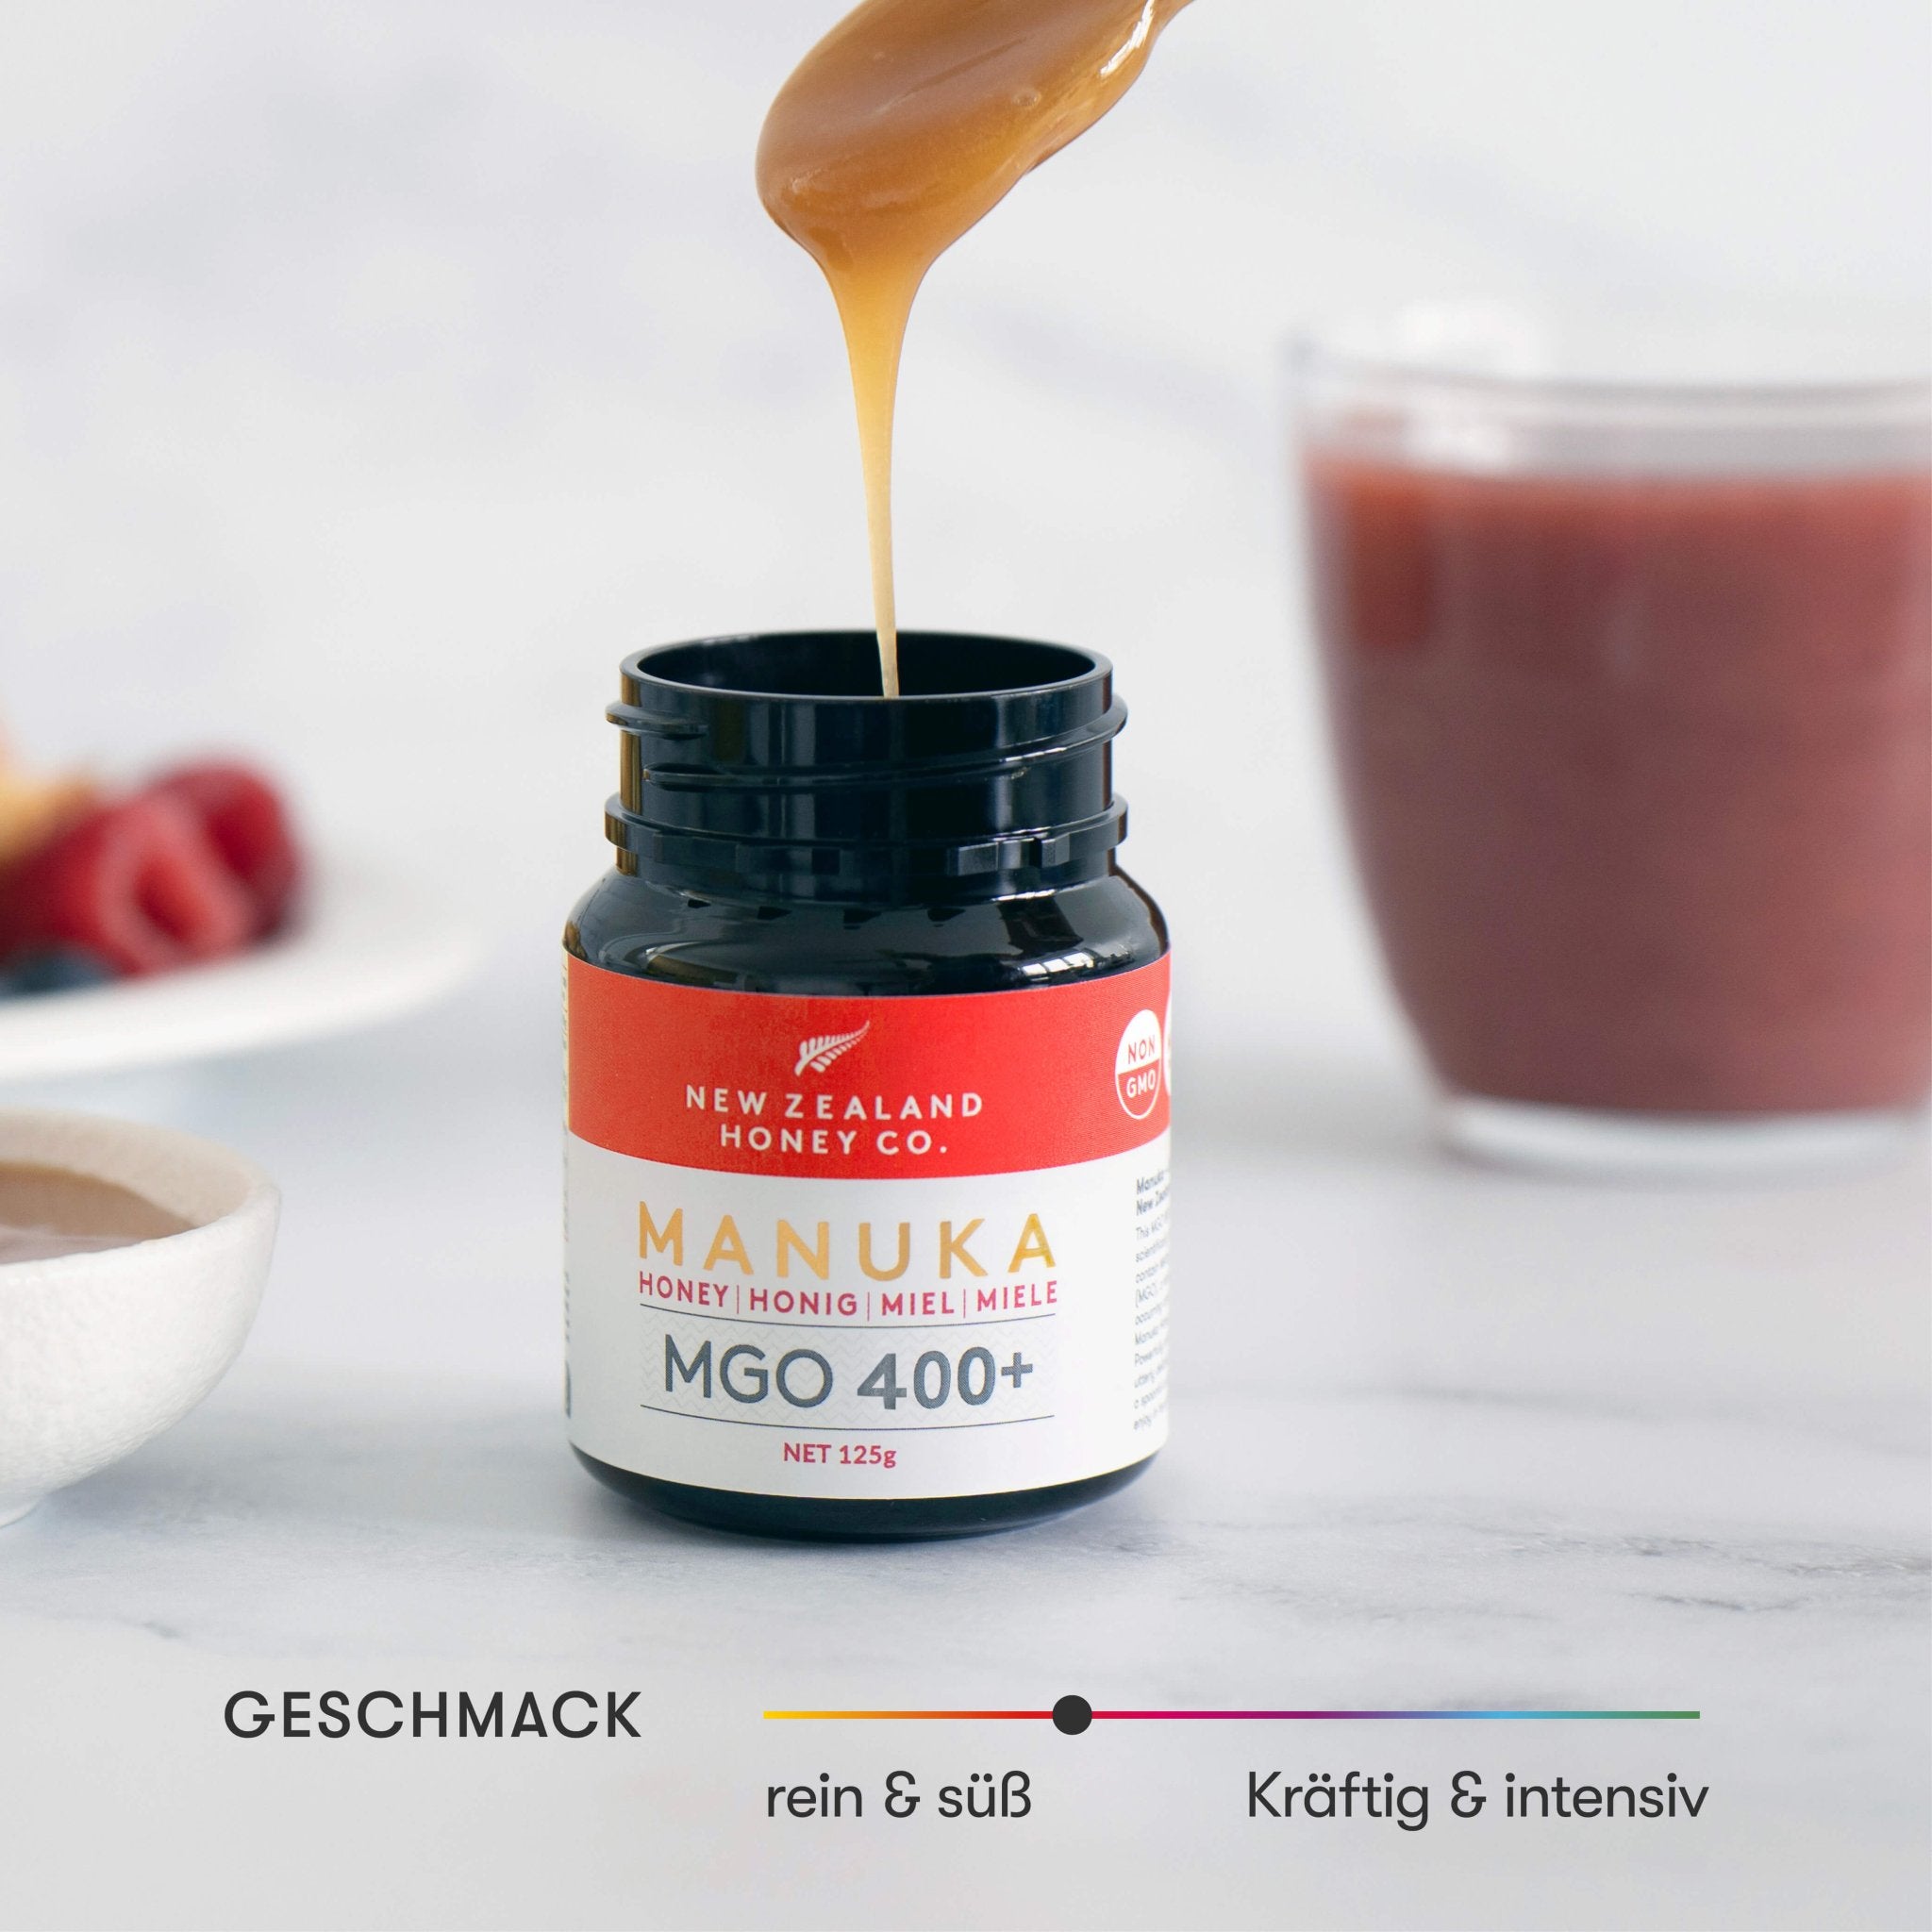 Manuka-Honig Minis - New Zealand Honey Co. DE